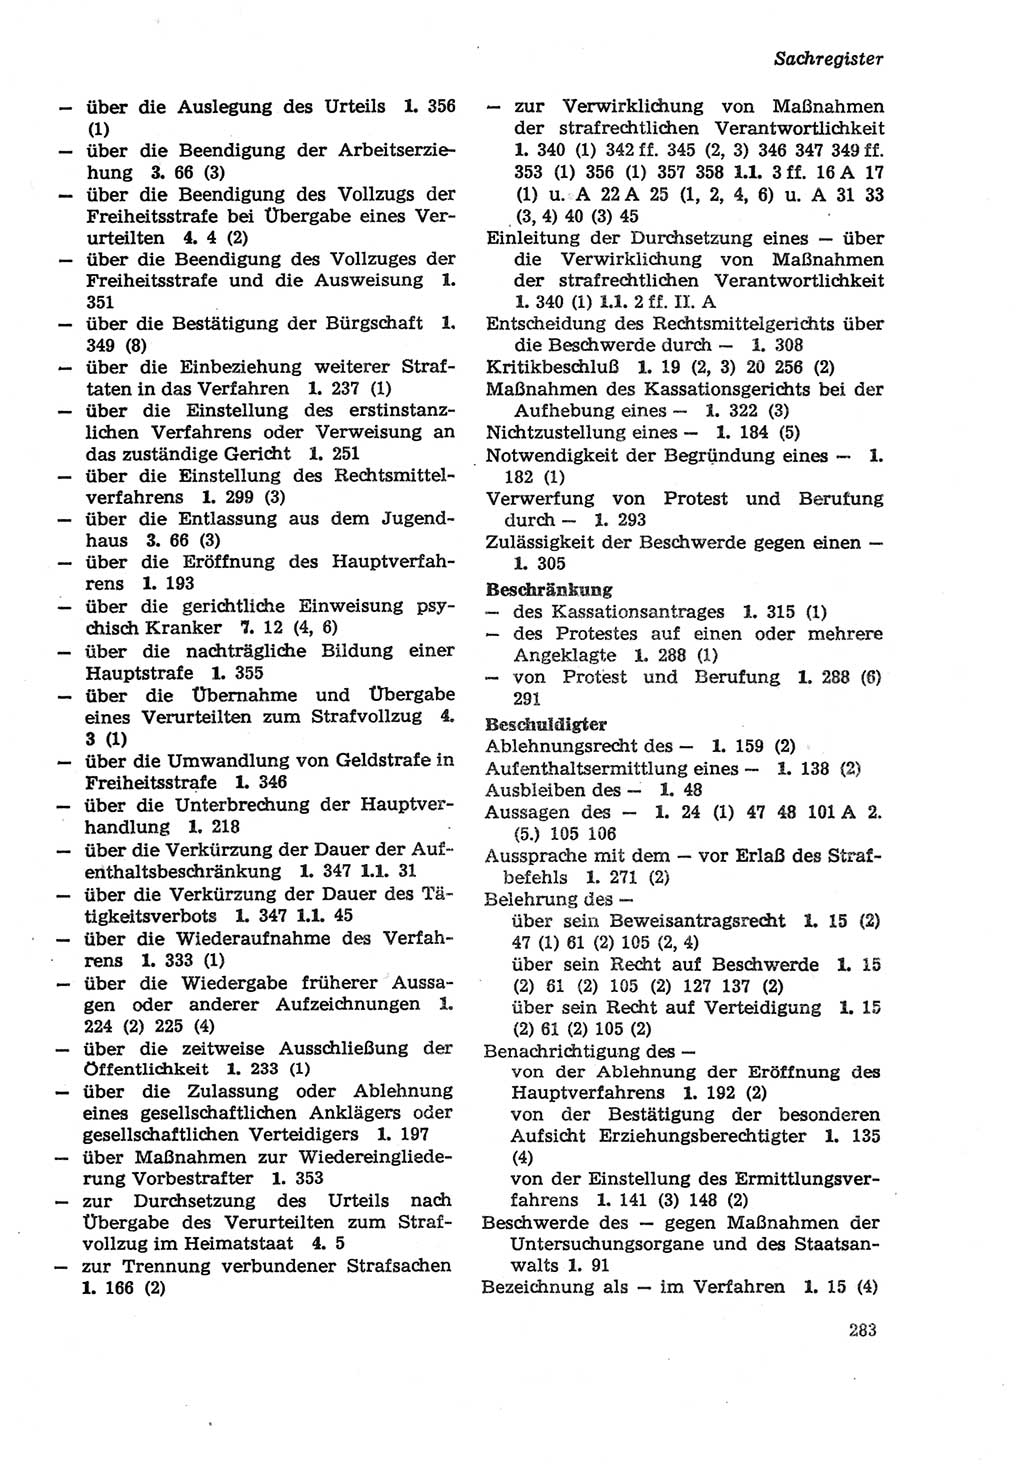 Strafprozeßordnung (StPO) der Deutschen Demokratischen Republik (DDR) sowie angrenzende Gesetze und Bestimmungen 1979, Seite 283 (StPO DDR Ges. Best. 1979, S. 283)